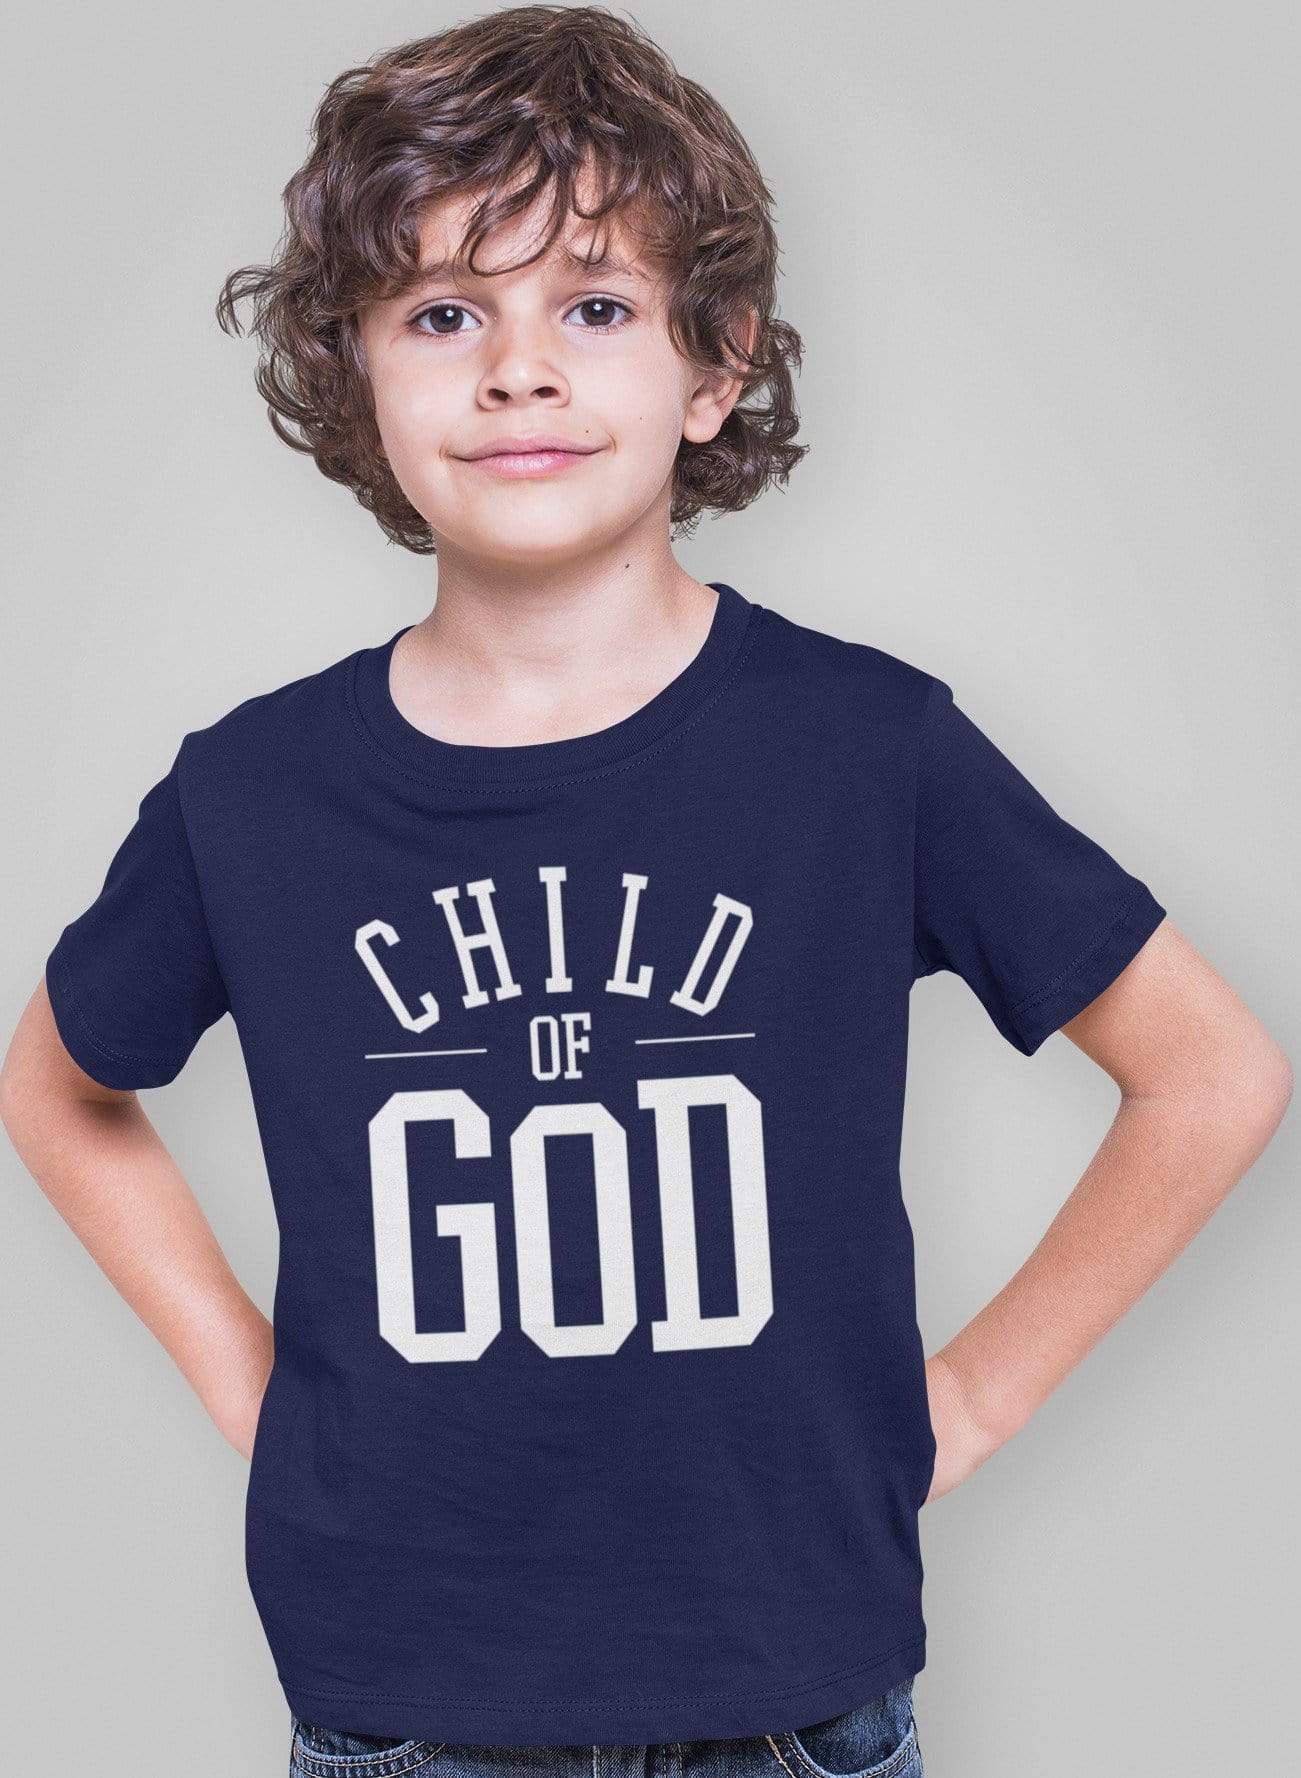 Living Words Boy Round neck Tshirt 0-11M / Navy Blue Child of God